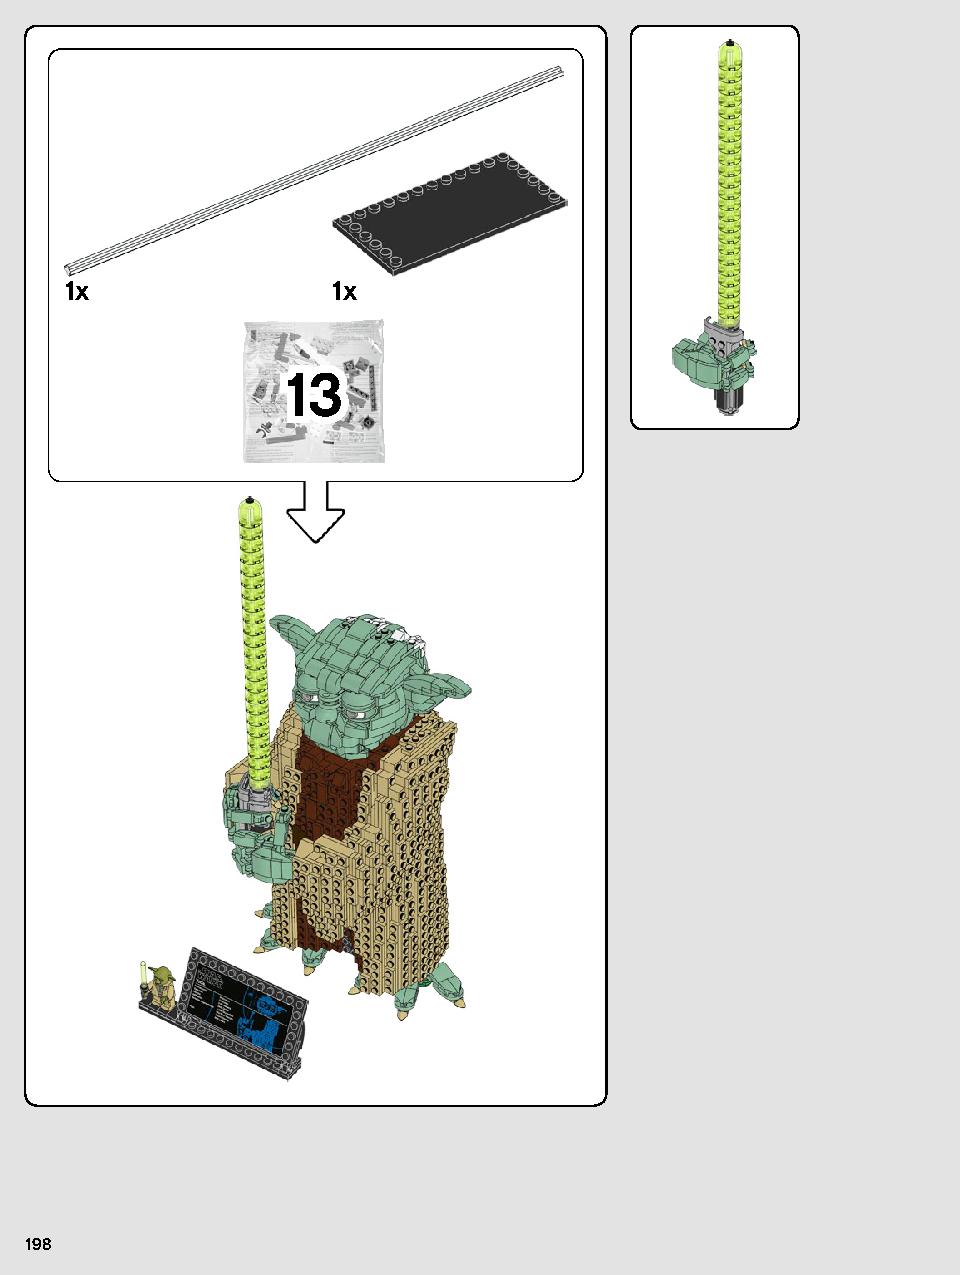 ヨーダ™ 75255 レゴの商品情報 レゴの説明書・組立方法 198 page